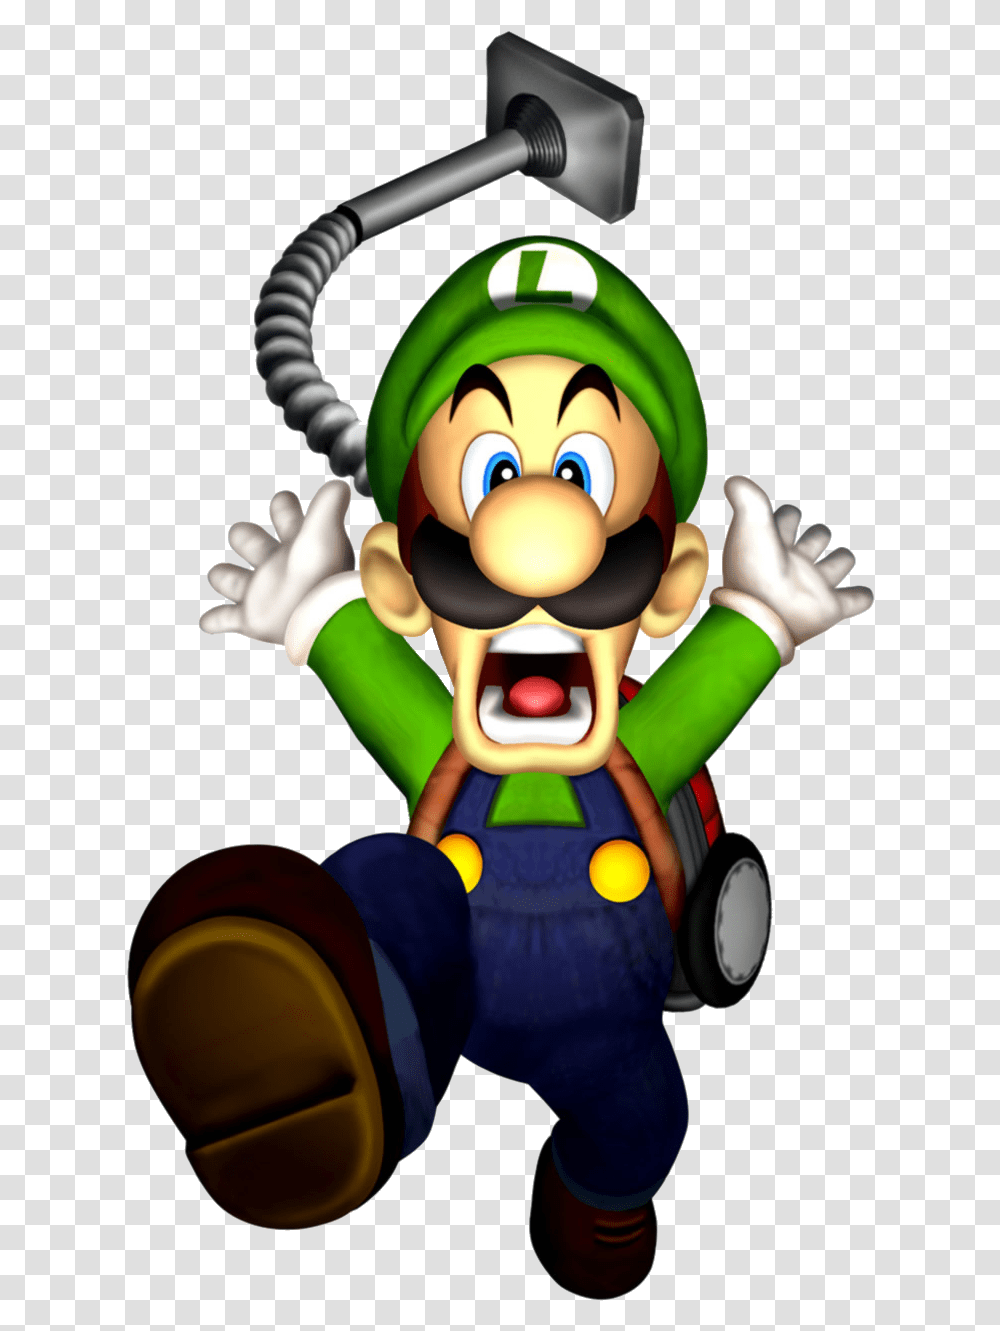 Mansion Luigi, Super Mario, Toy, Elf, Mascot Transparent Png